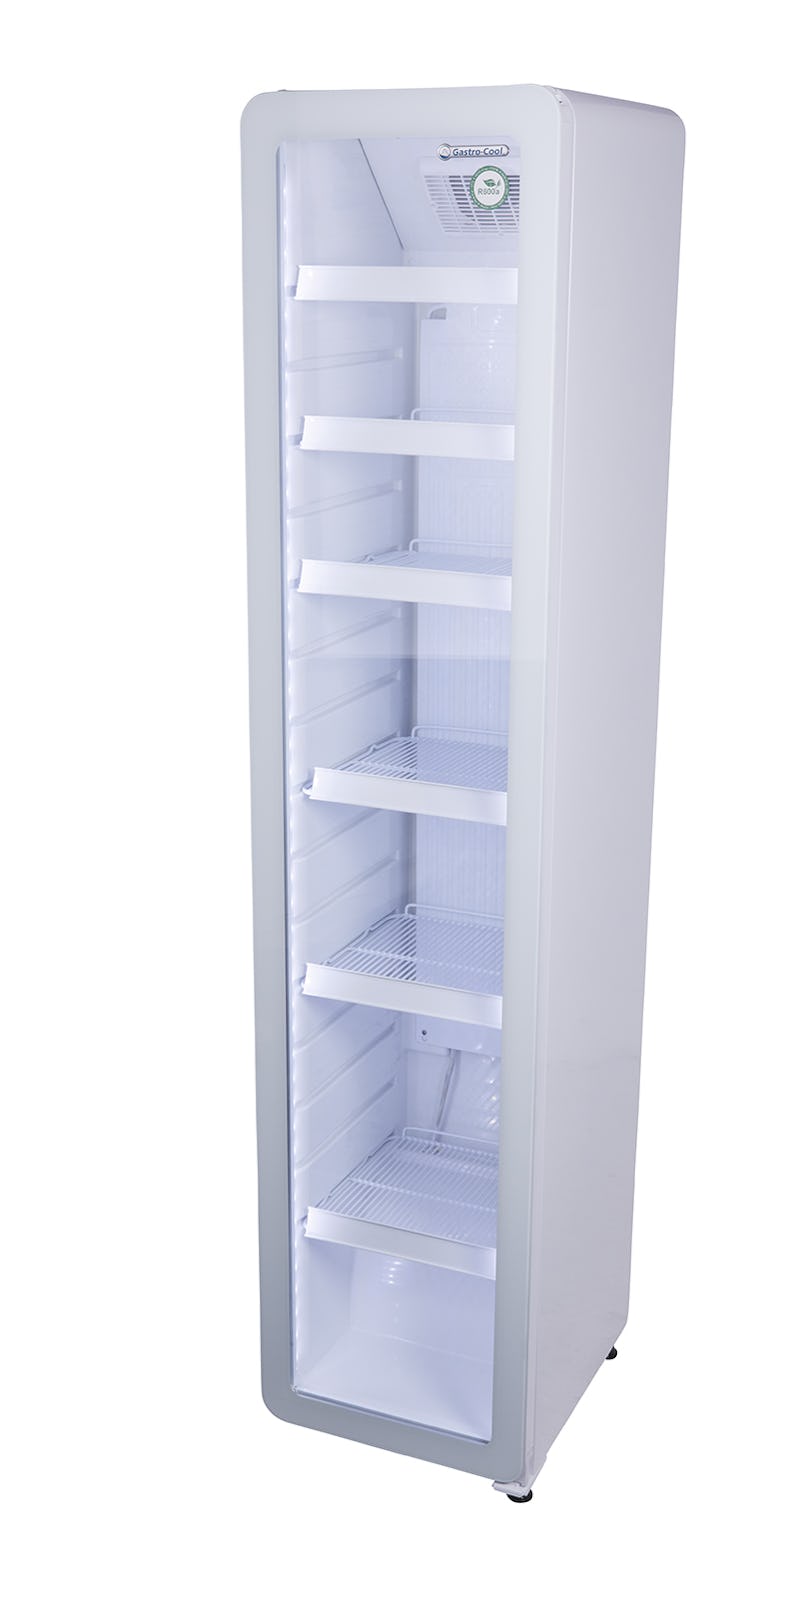 Flaschenkühlschrank mit Glastür - Gastronomie - Bar - schwarz - LED - KW90